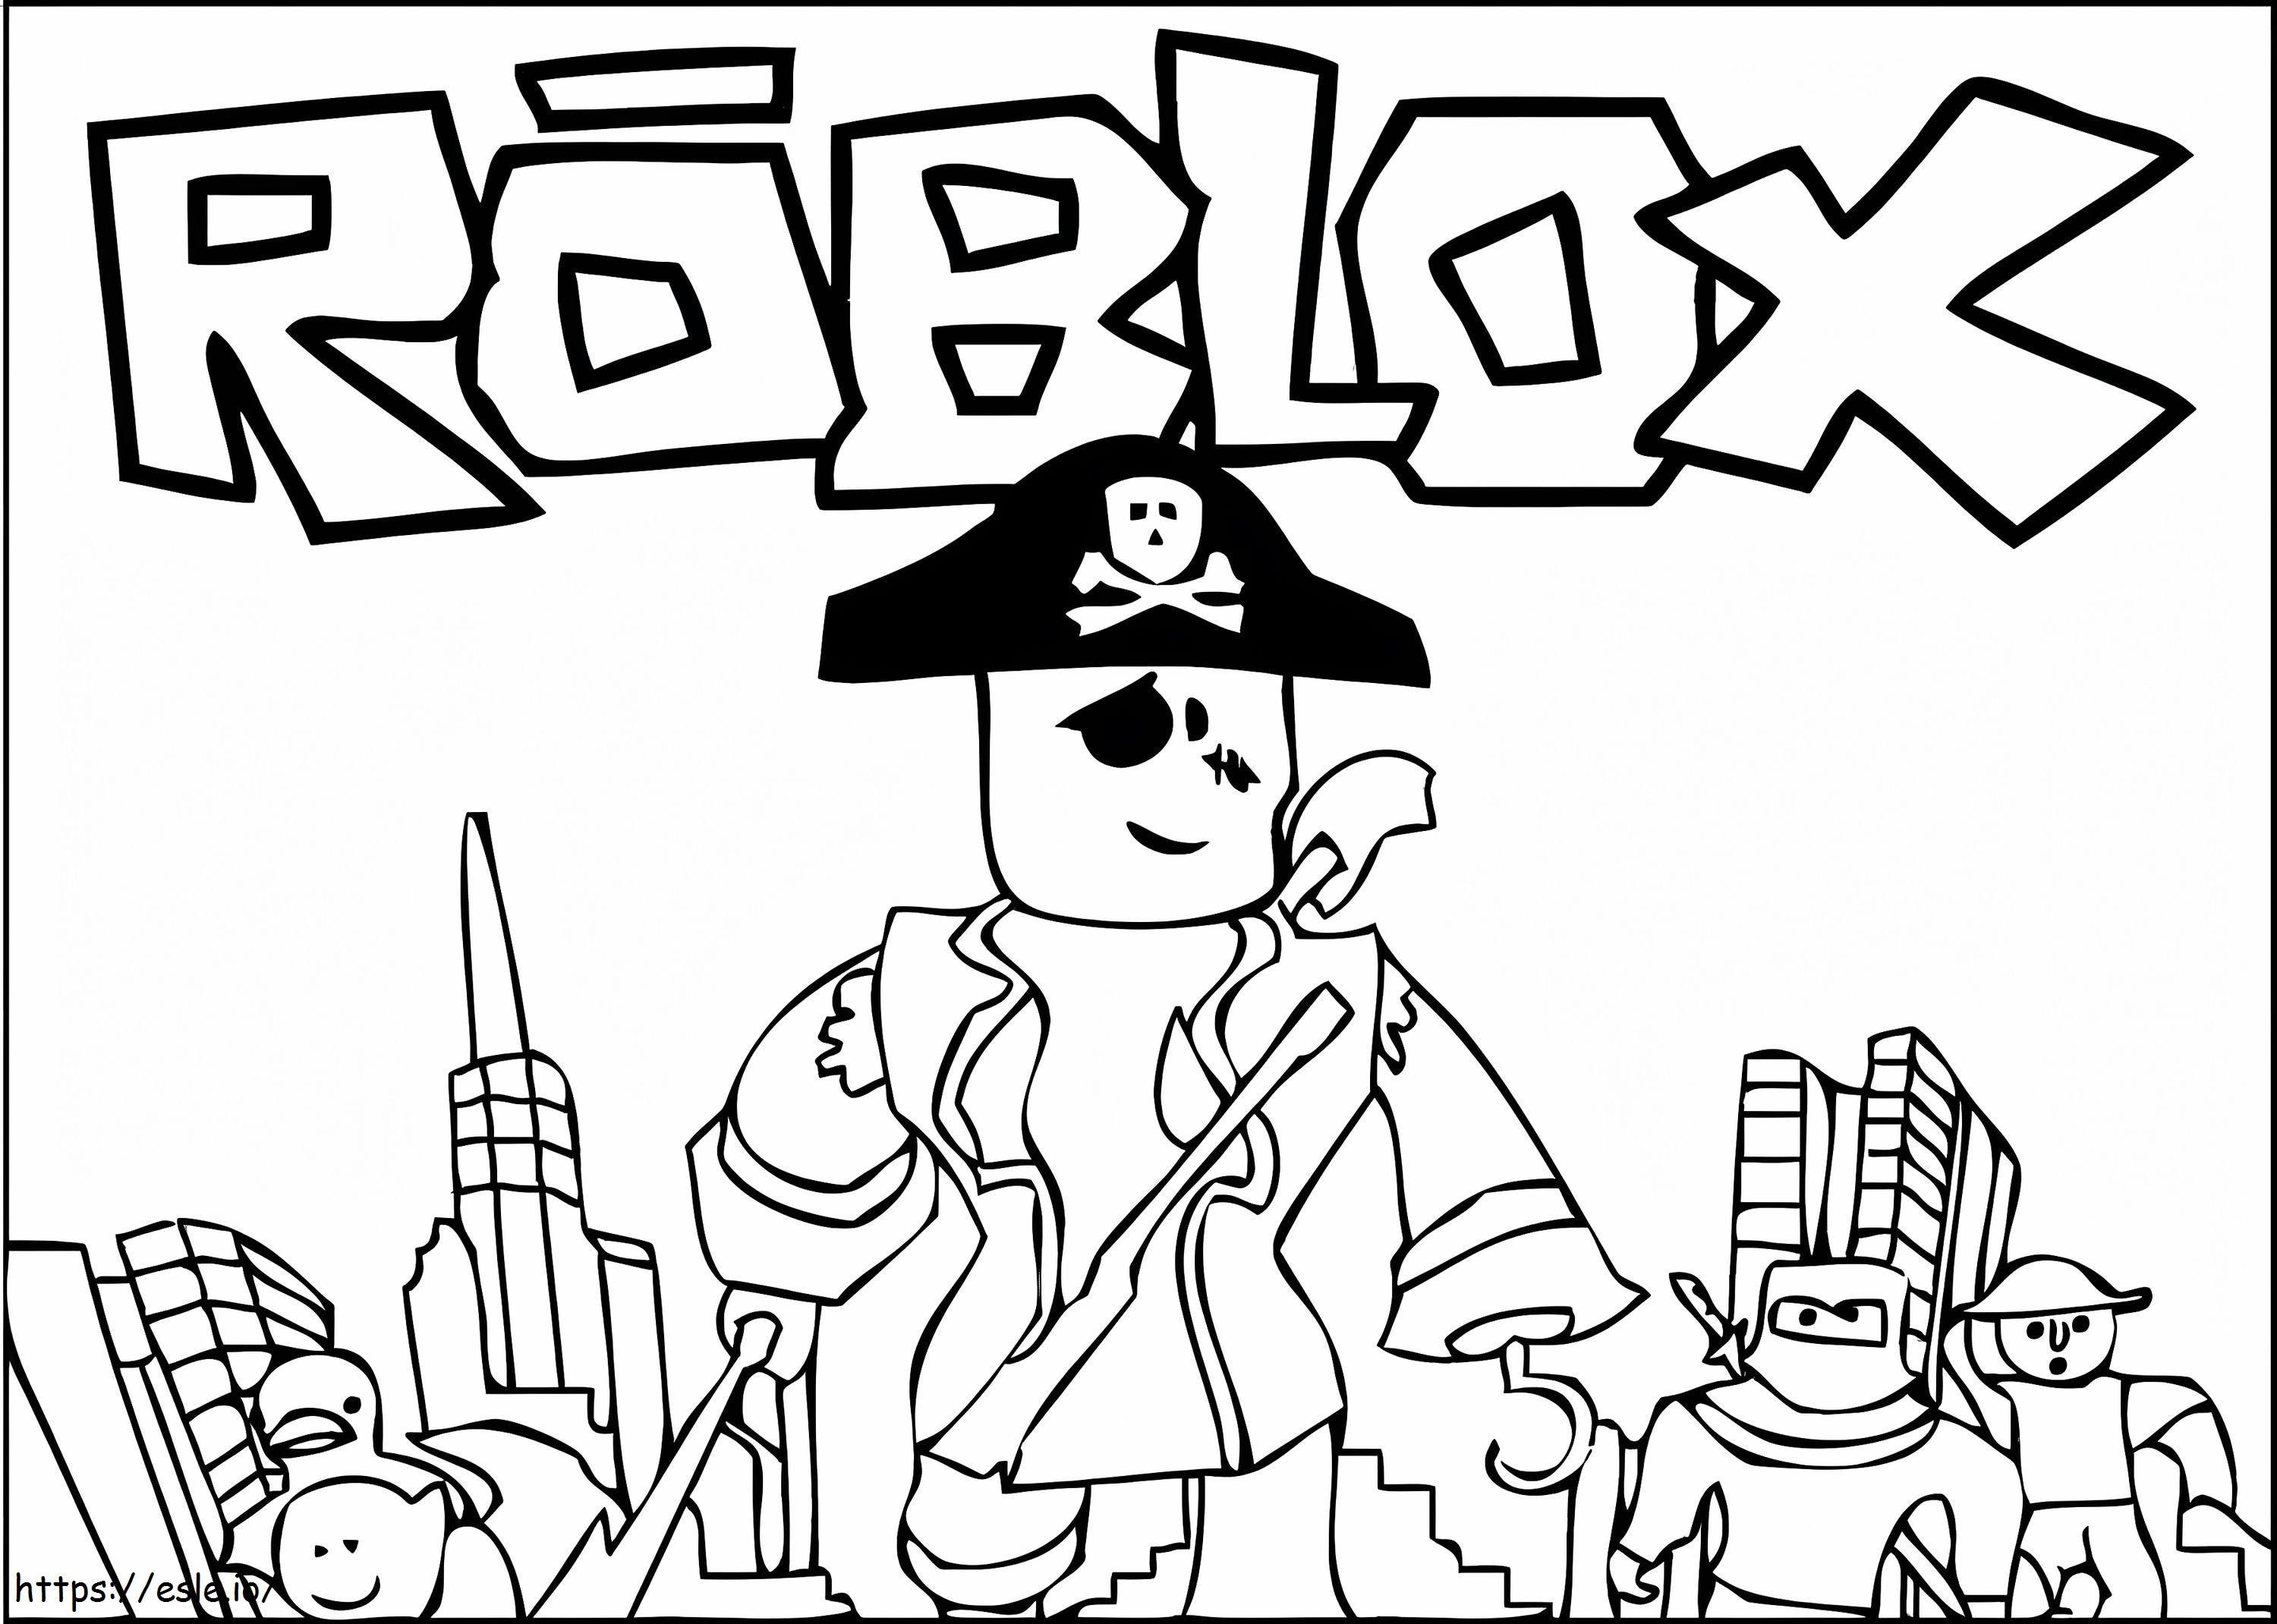 Piratul Roblox de colorat